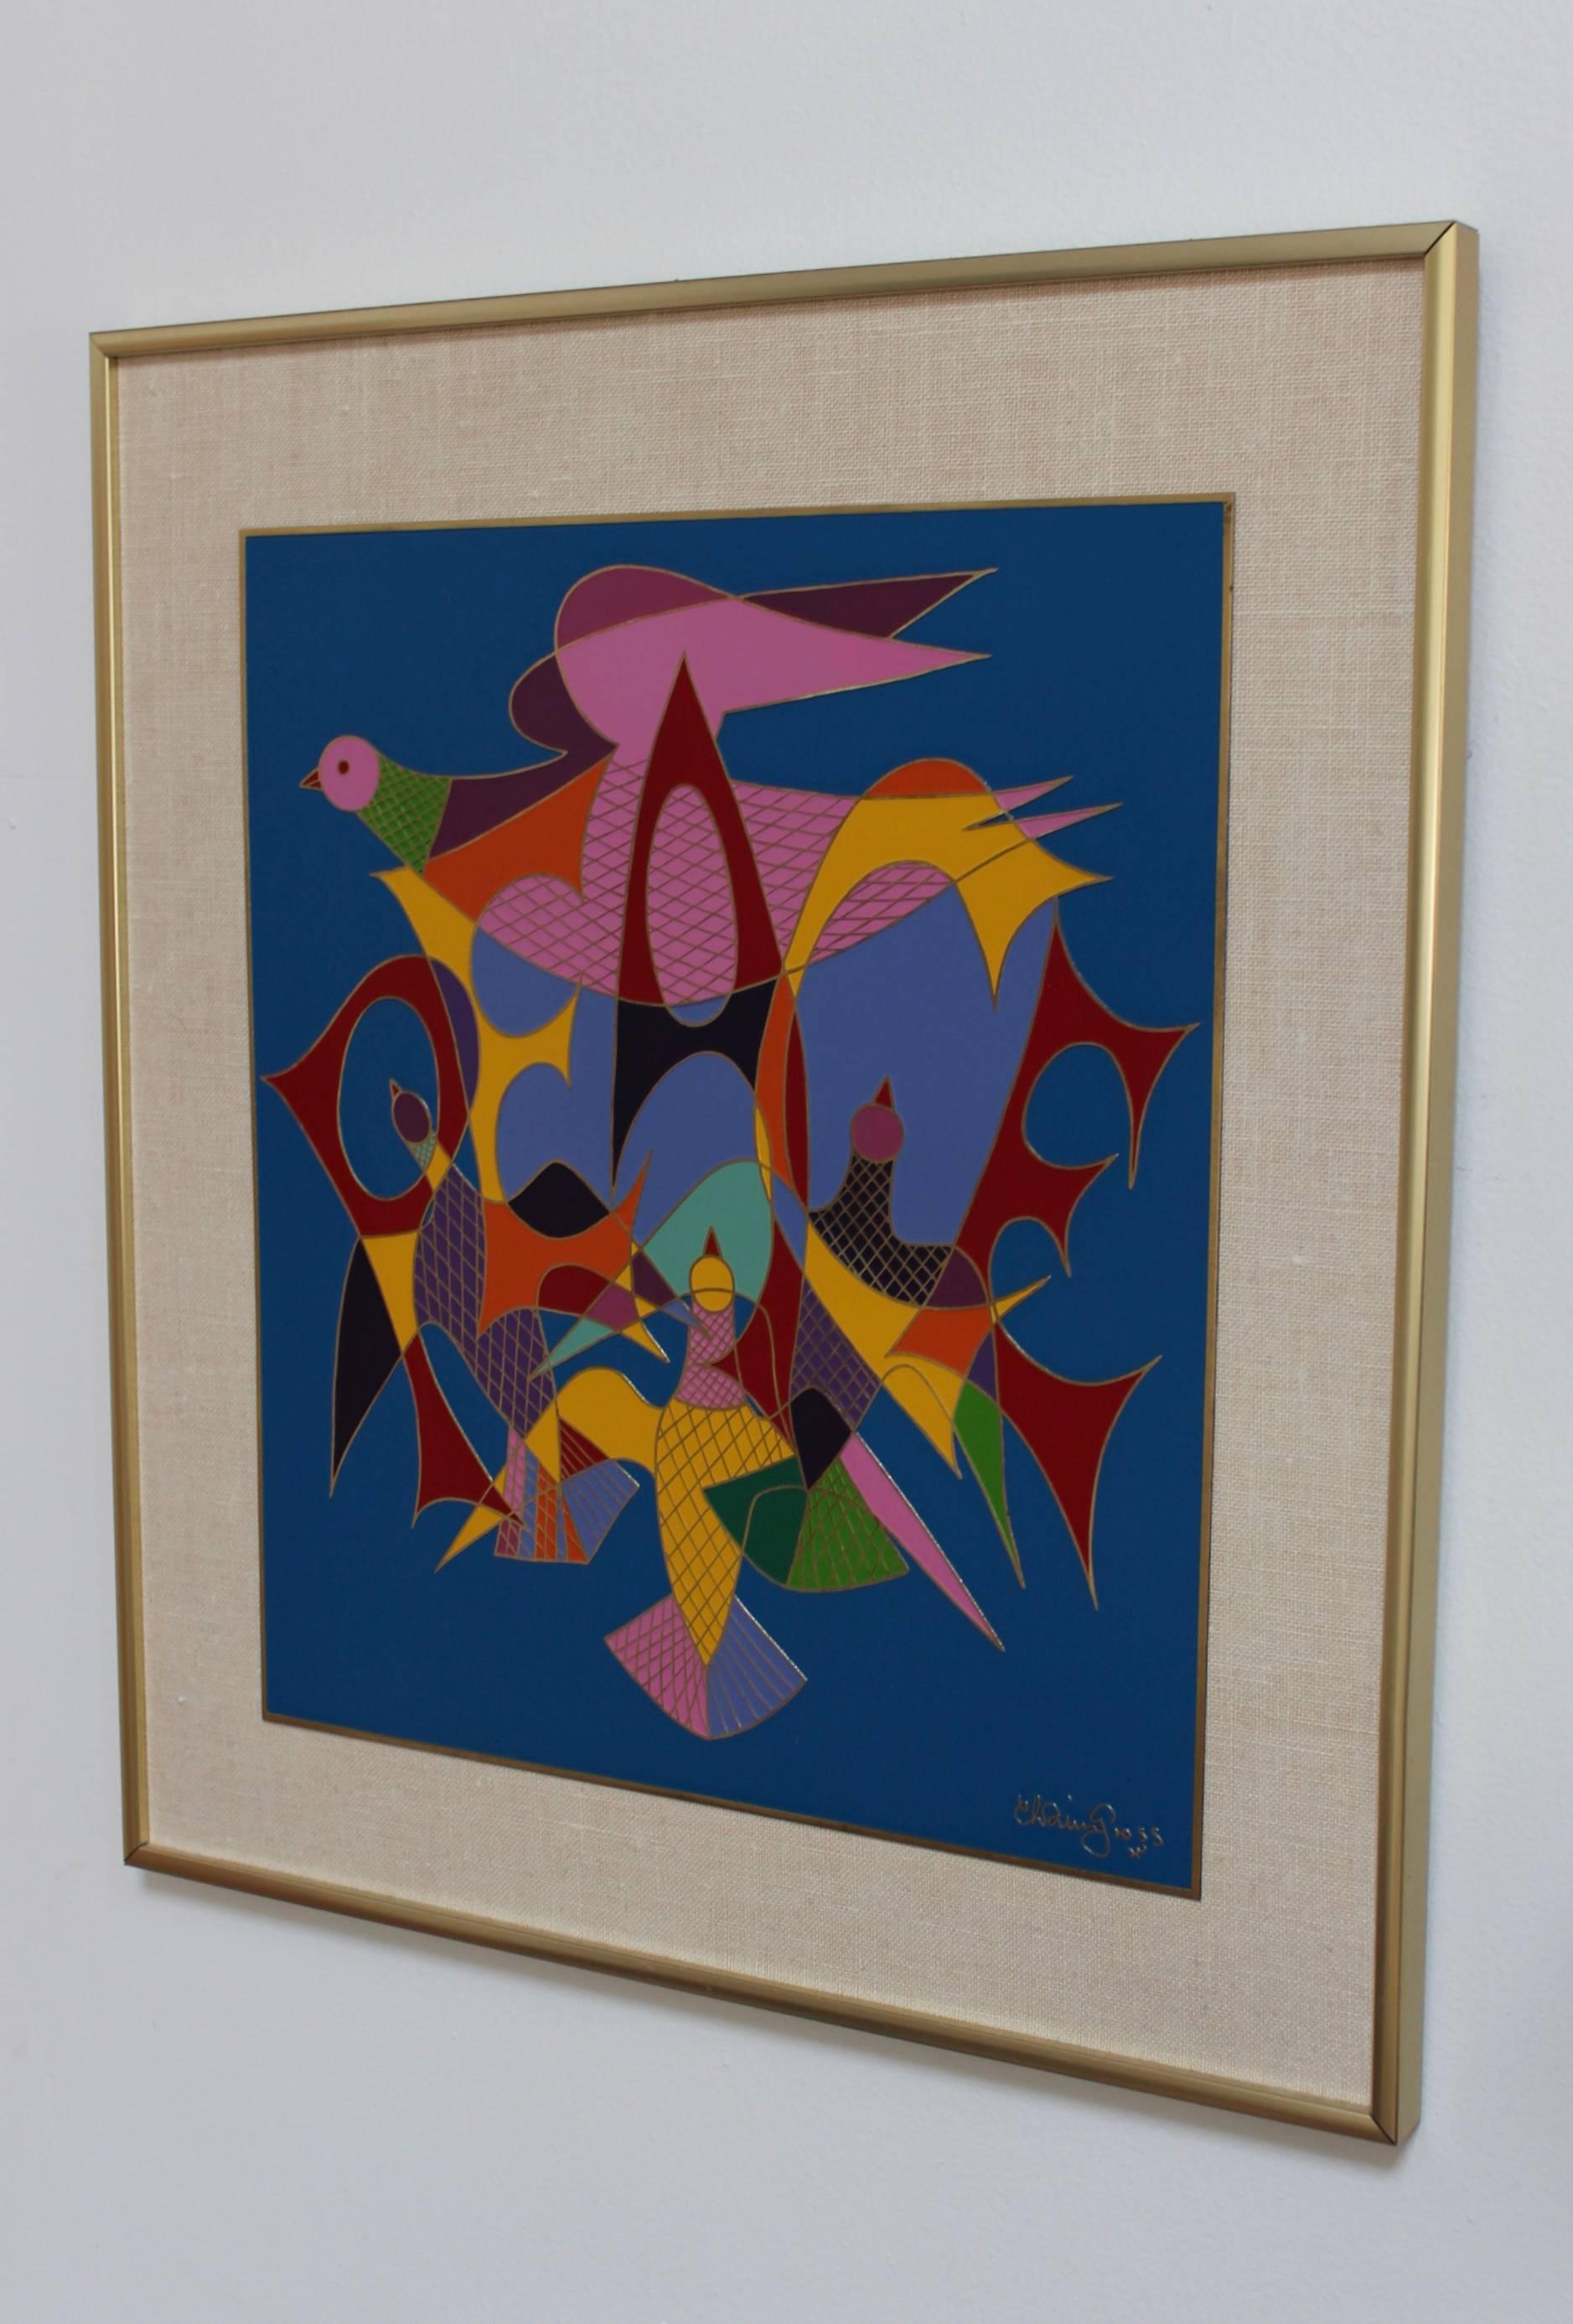 1970s Chaim Gross enamel 'Peace' pop art.

Art measurements: Width 13.25, height 15.25.